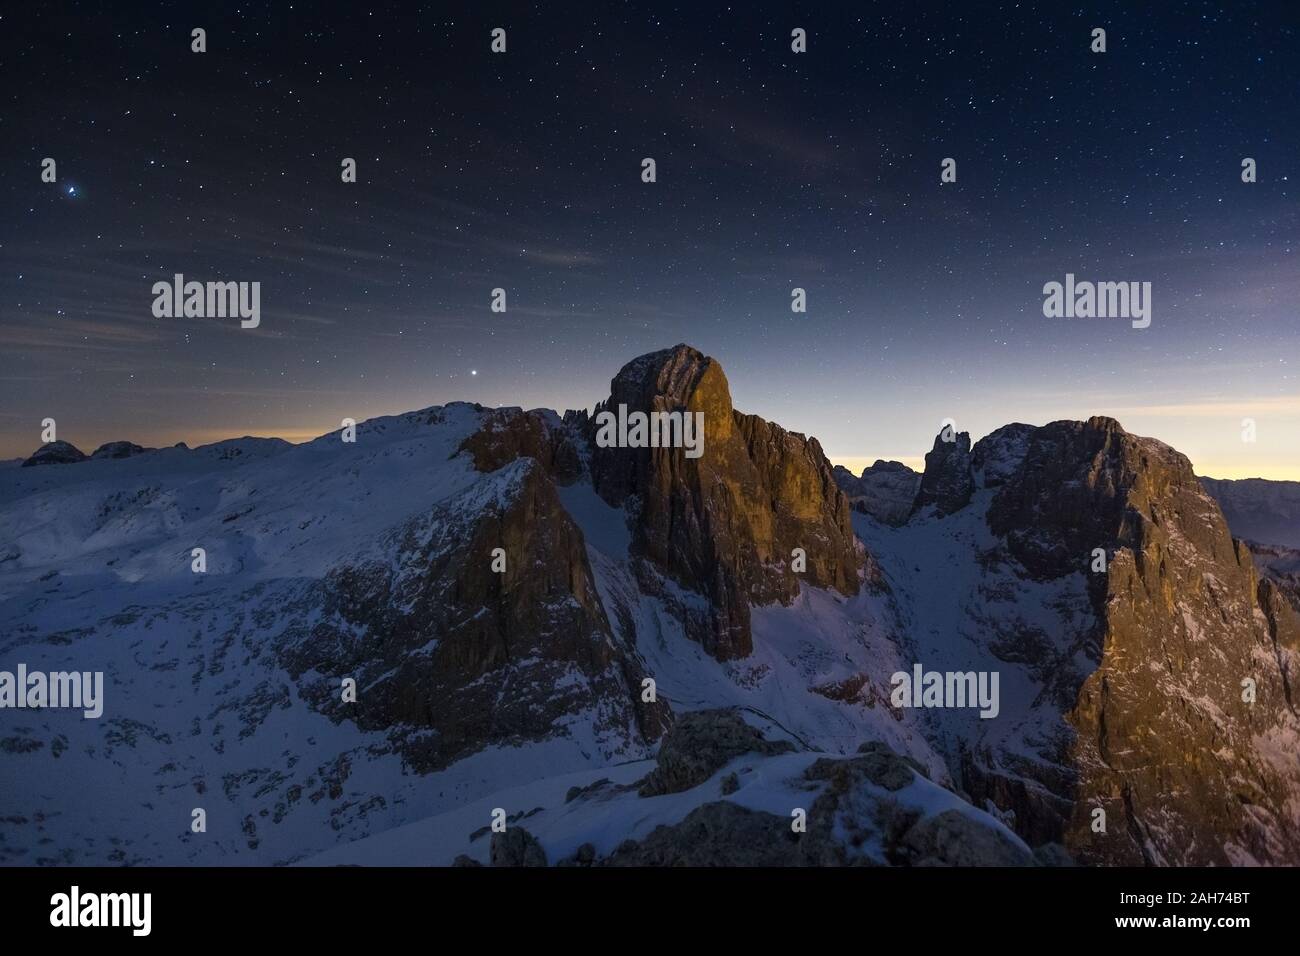 Die Pale di San Martino Gruppe in der Nacht. Pala Peak. Die Dolomiten des Trentino. Nacht Berglandschaft, Sternenhimmel. Primiero. Italienische Alpen. Europa. Stockfoto